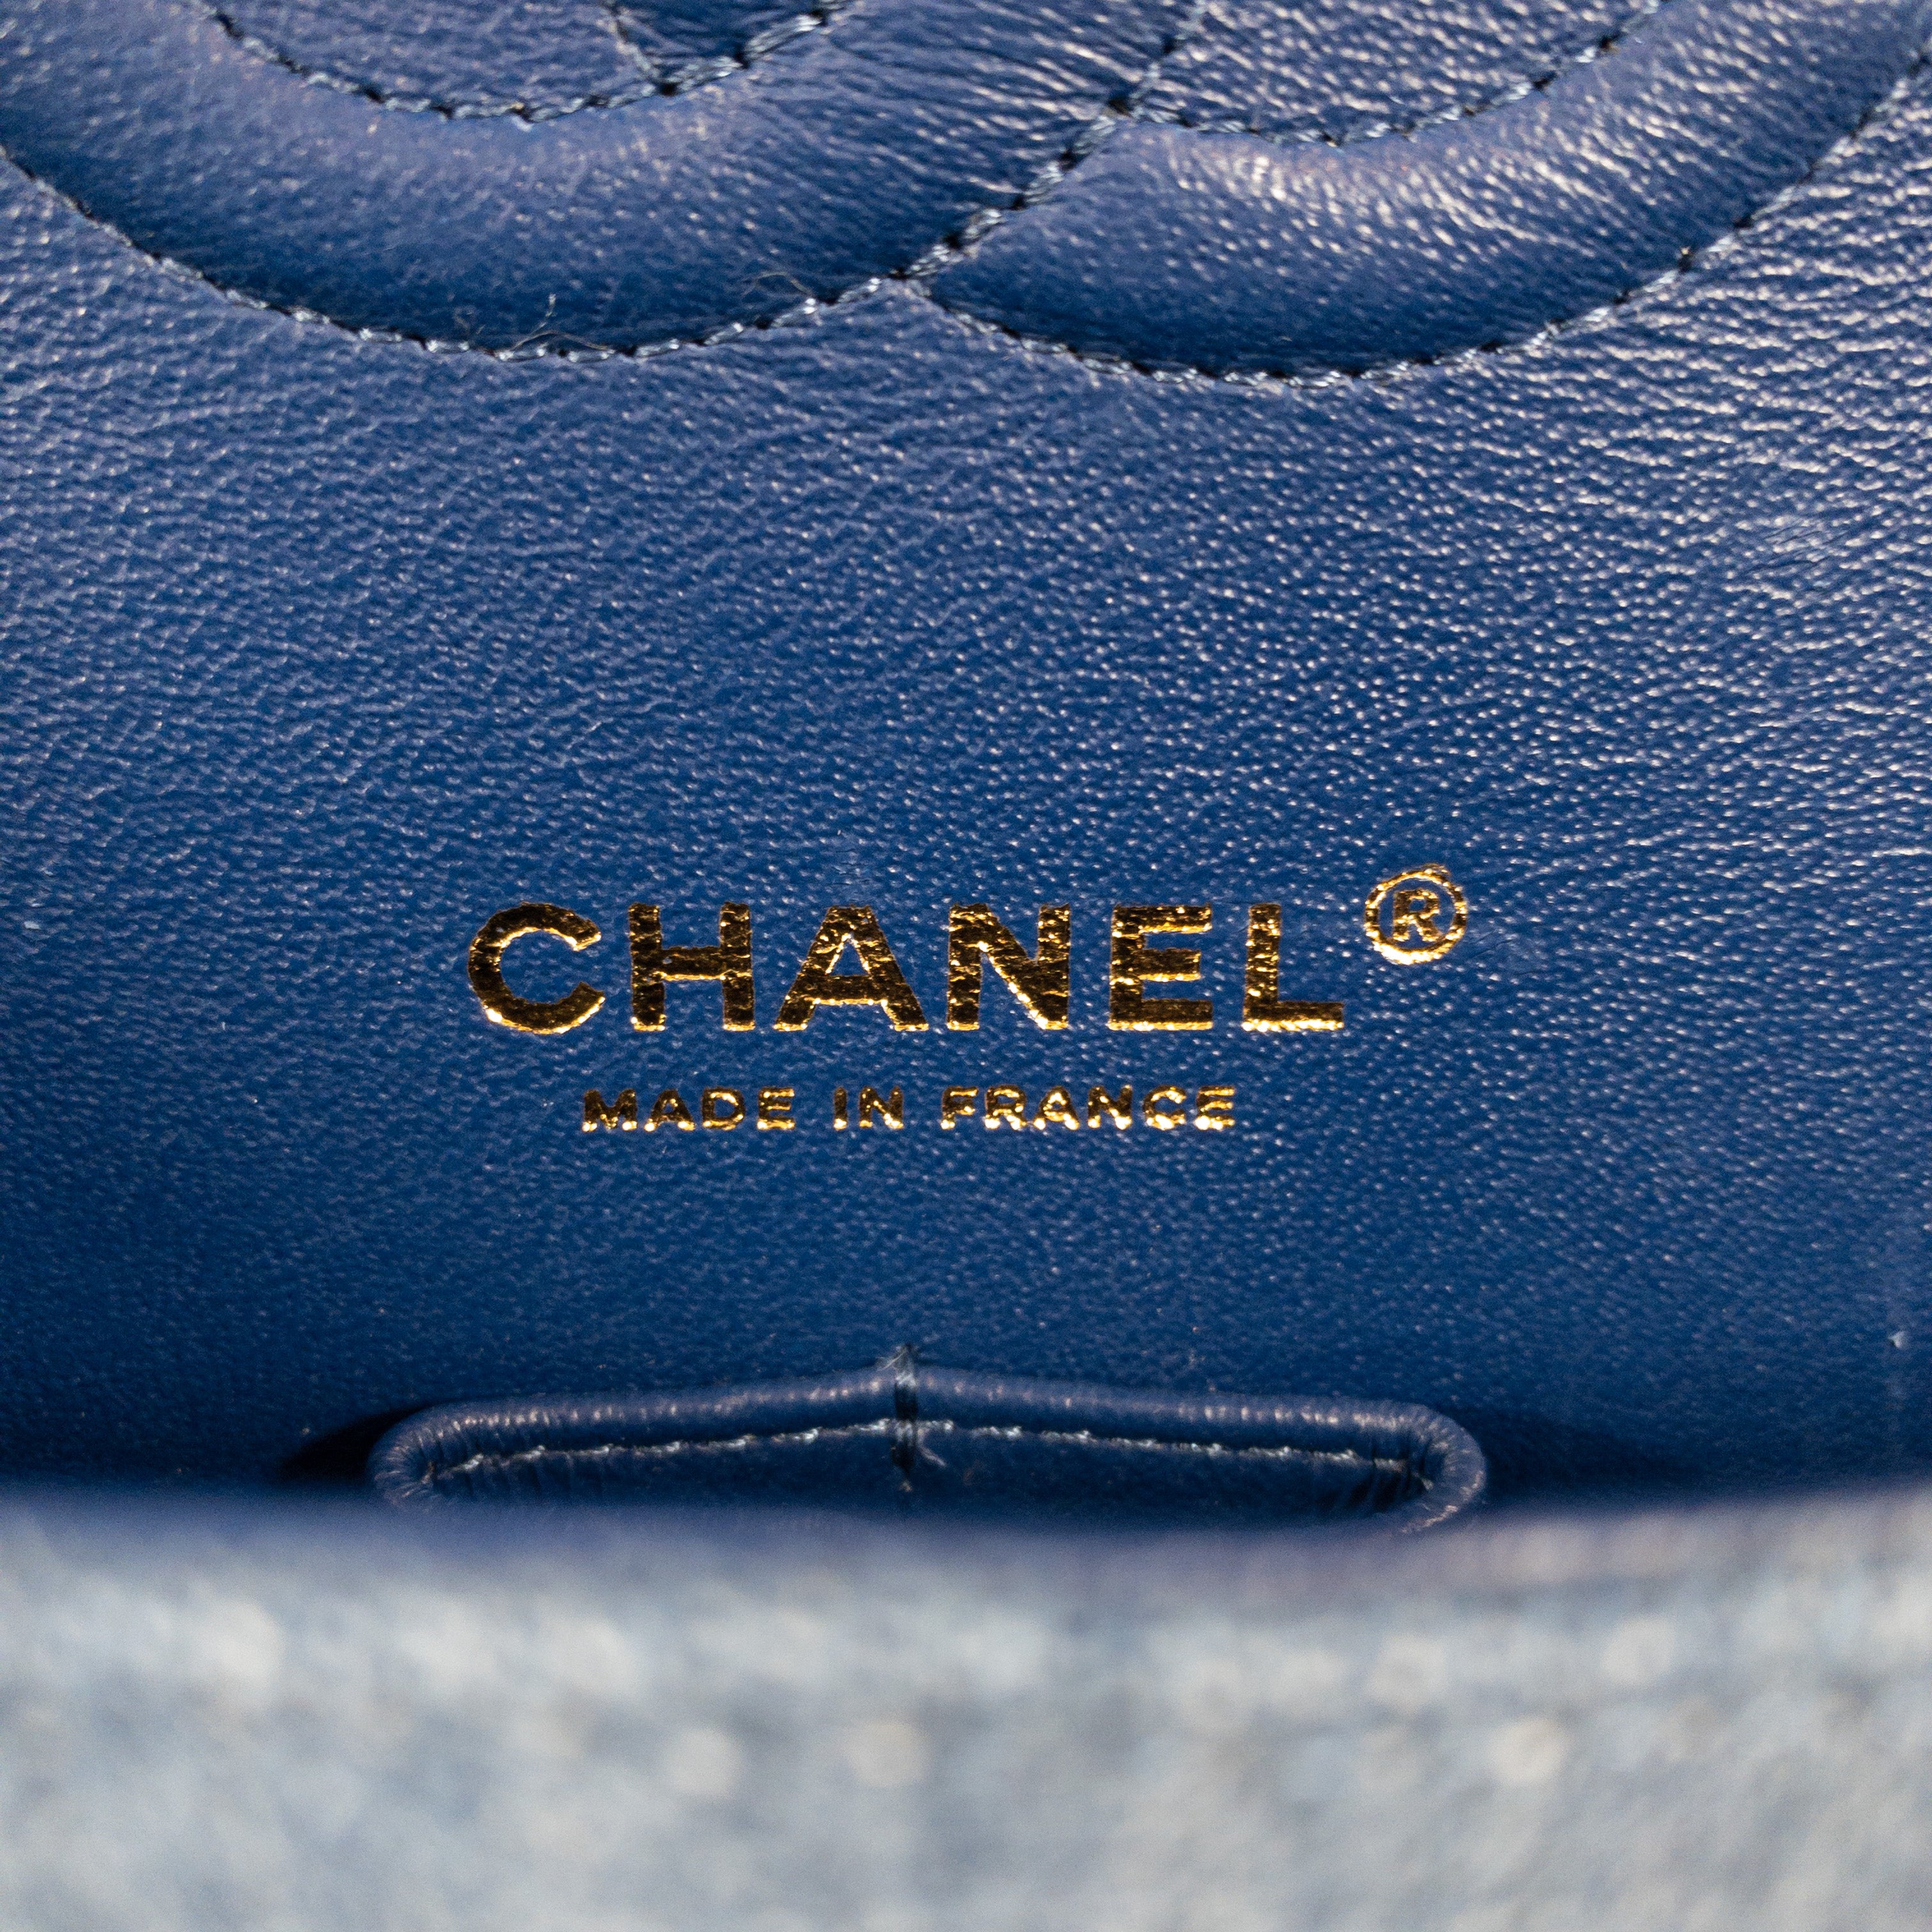 Chanel Washed Denim Medium Classic Flap